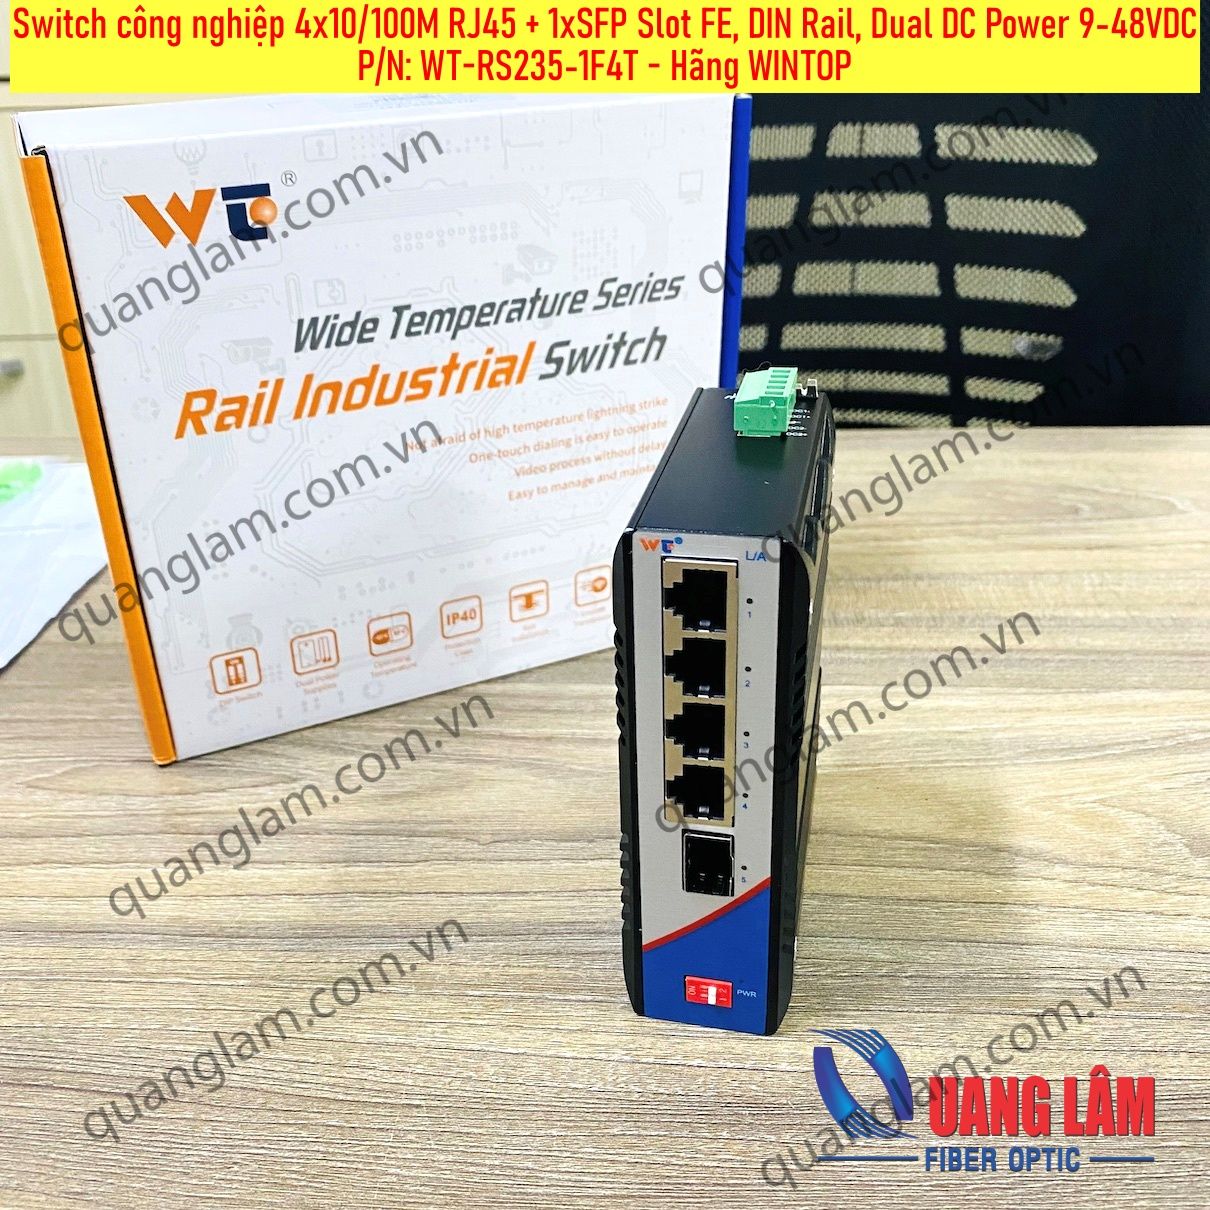 Switch công nghiệp 4x10/100M RJ45 + 1xSFP Slot FE, DIN Rail, Dual DC Power 9-48VDC, P/N: WT-RS235-1F4T